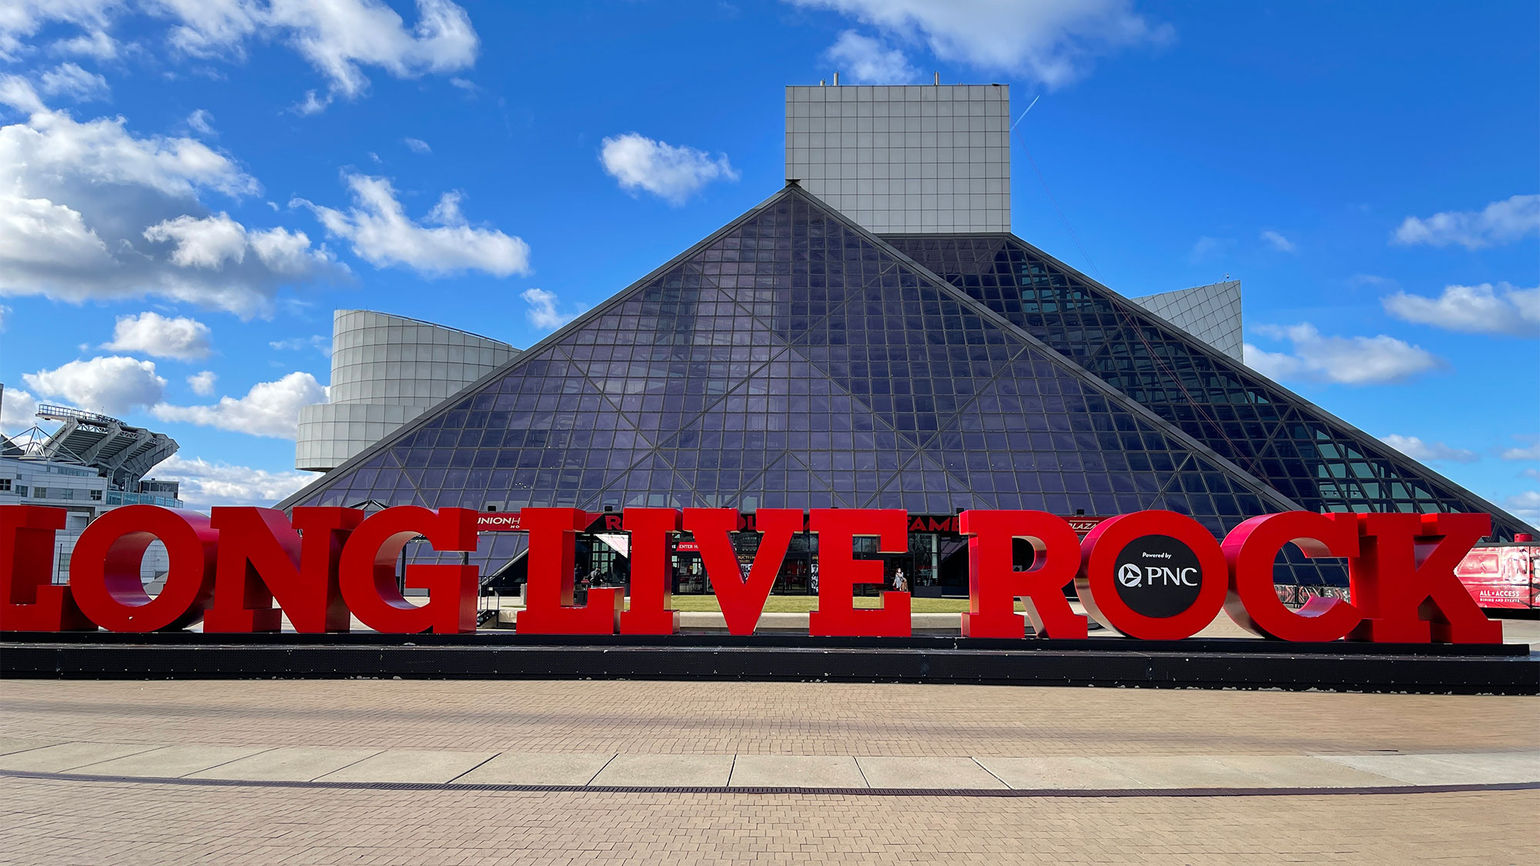 Hi, Ohio: Big in heart, hospitality and rock 'n' roll